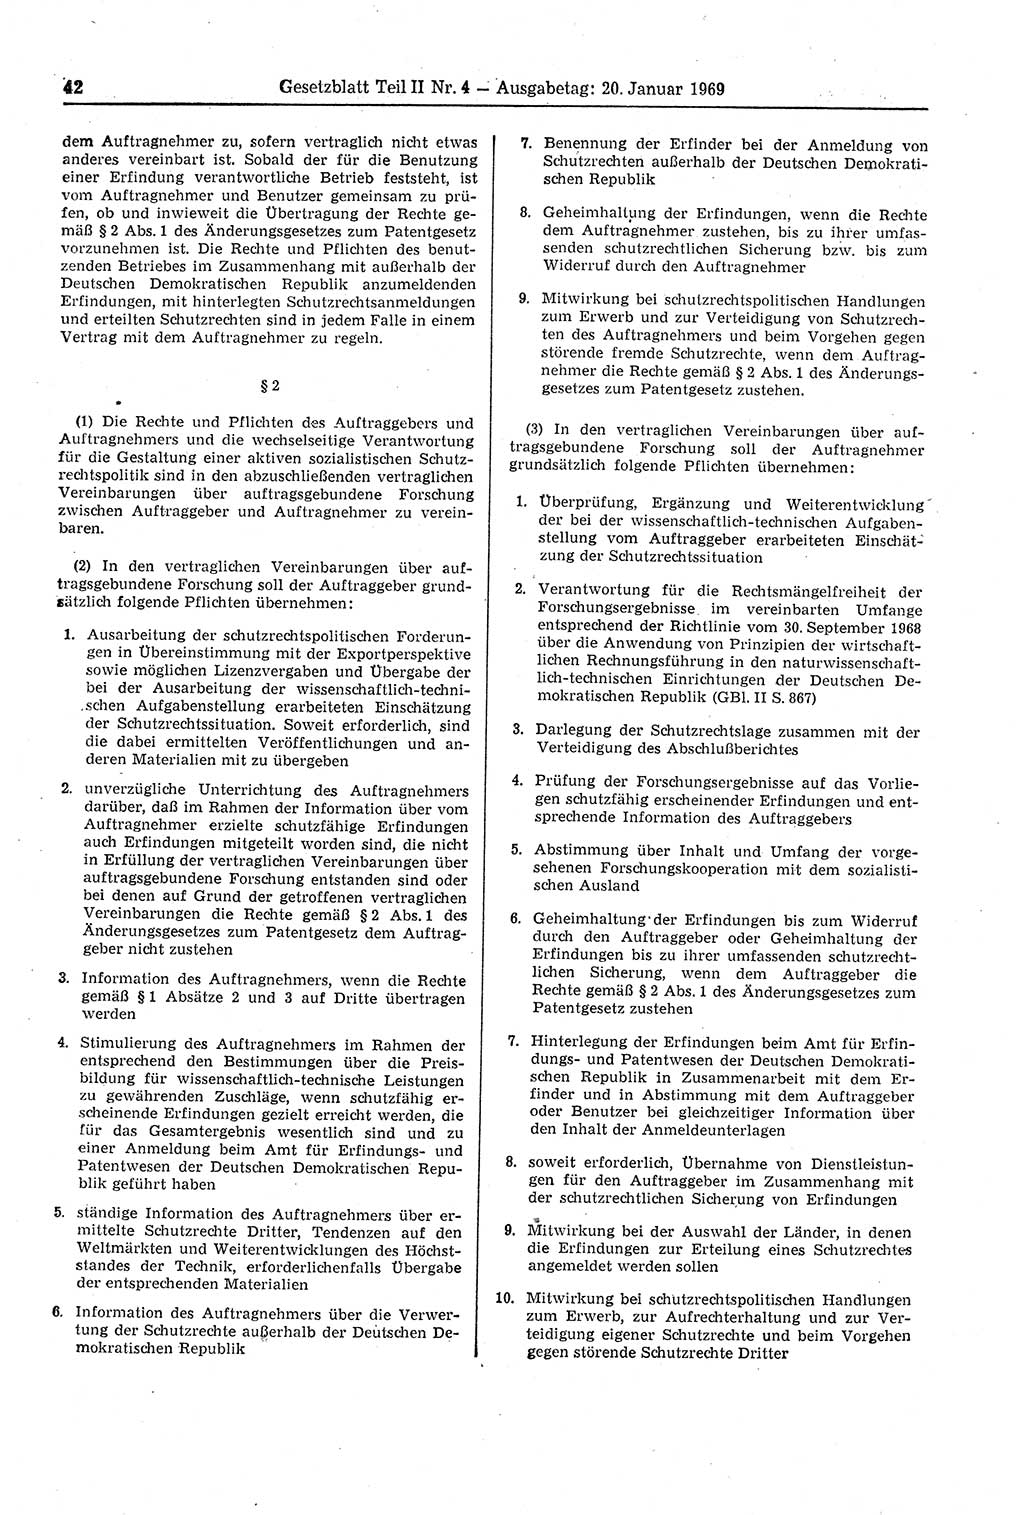 Gesetzblatt (GBl.) der Deutschen Demokratischen Republik (DDR) Teil ⅠⅠ 1969, Seite 42 (GBl. DDR ⅠⅠ 1969, S. 42)